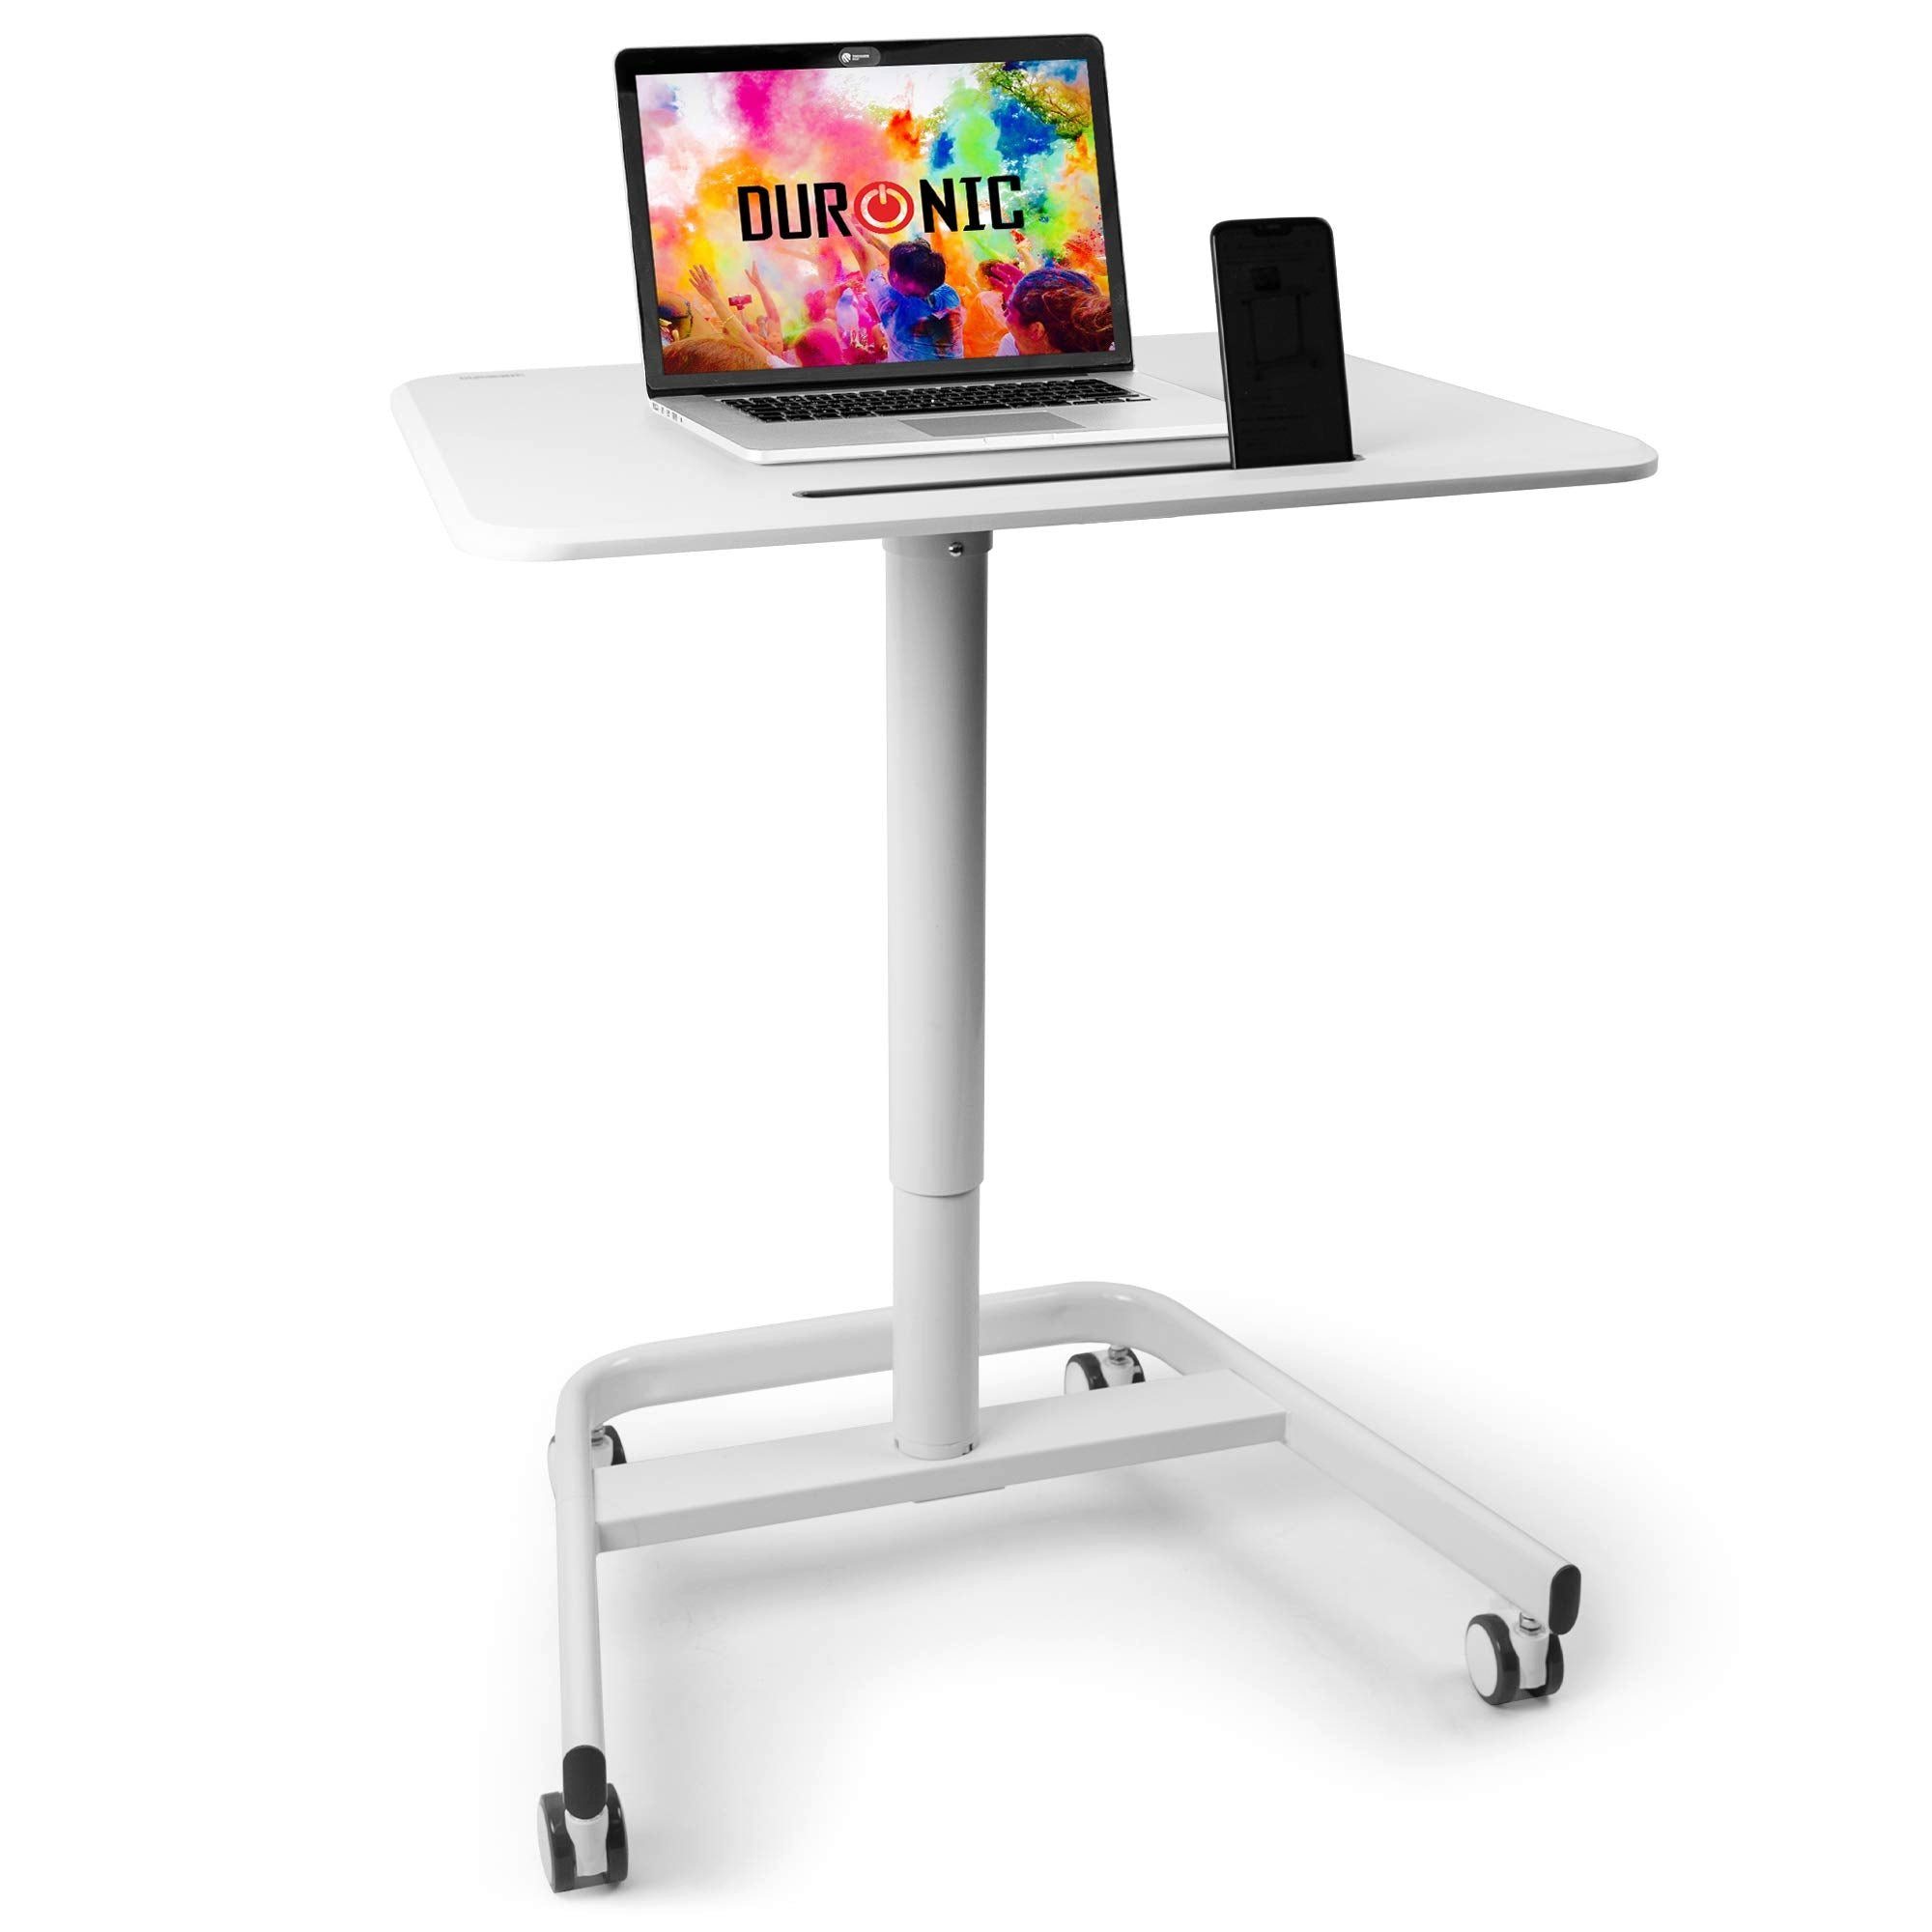 Duronic Laptoptisch, WPS77 Arbeitstisch, Laptoptisch 71 x 50 cm bis 15 kg,  Computertisch mit Rollen und Tablet Halterung, Höhenverstellbarer  Projektortisch für Beamer, Sitz-Stehtisch Schreibtisch Rolltisch